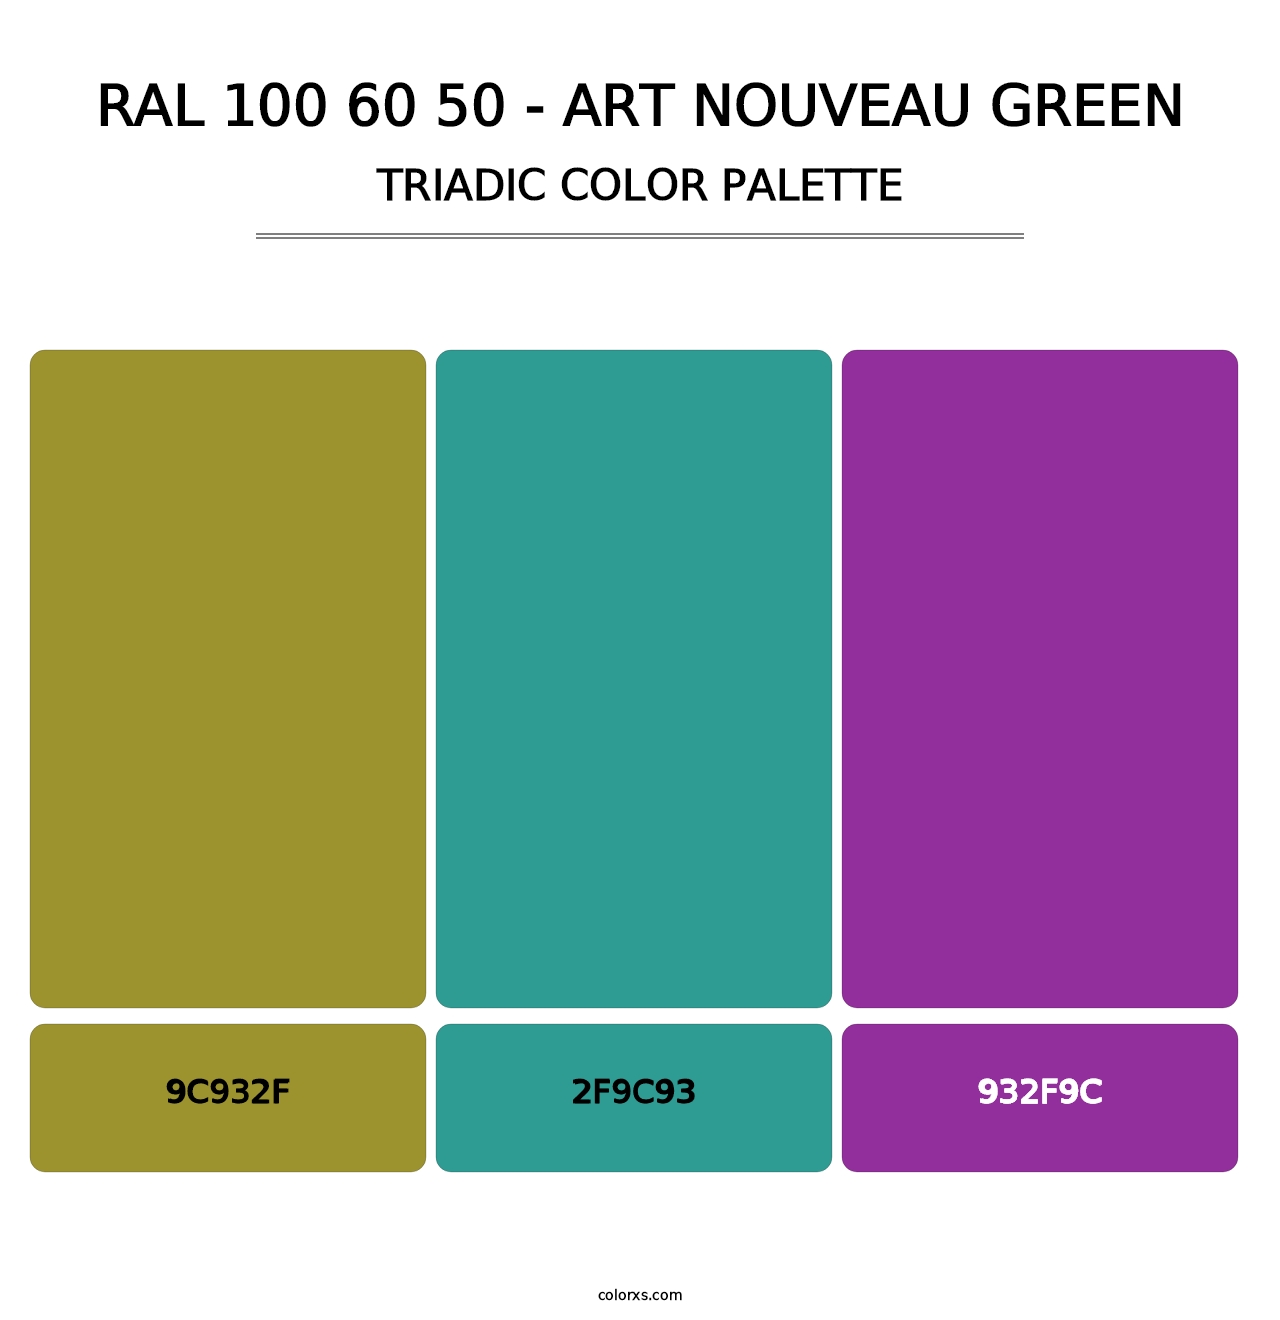 RAL 100 60 50 - Art Nouveau Green - Triadic Color Palette